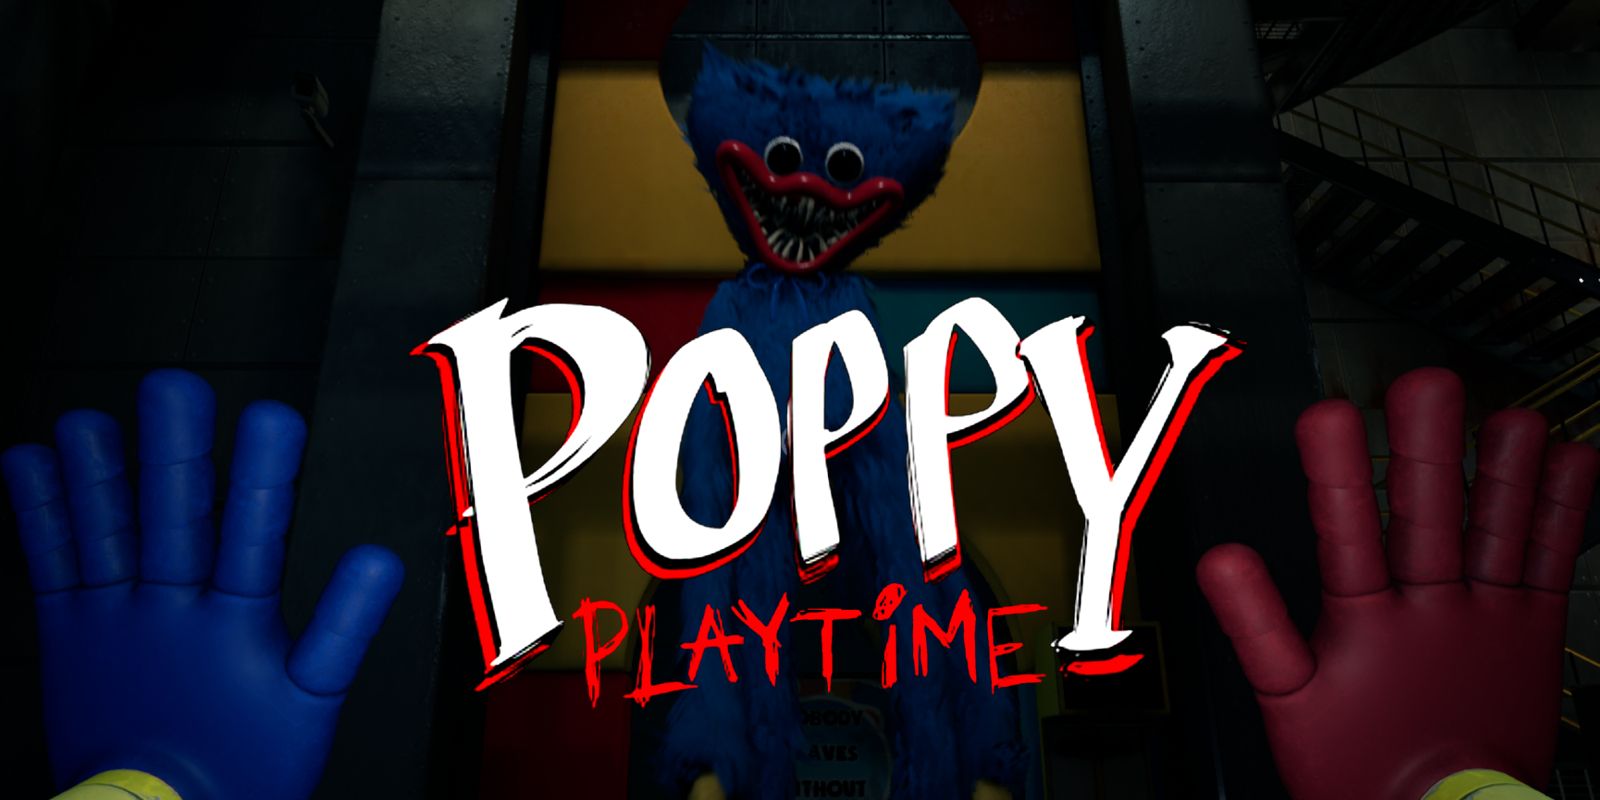 Playtime Co. Employee Training (Pt. 1)#PoppyPlaytimeChapter3 #PoppyPla